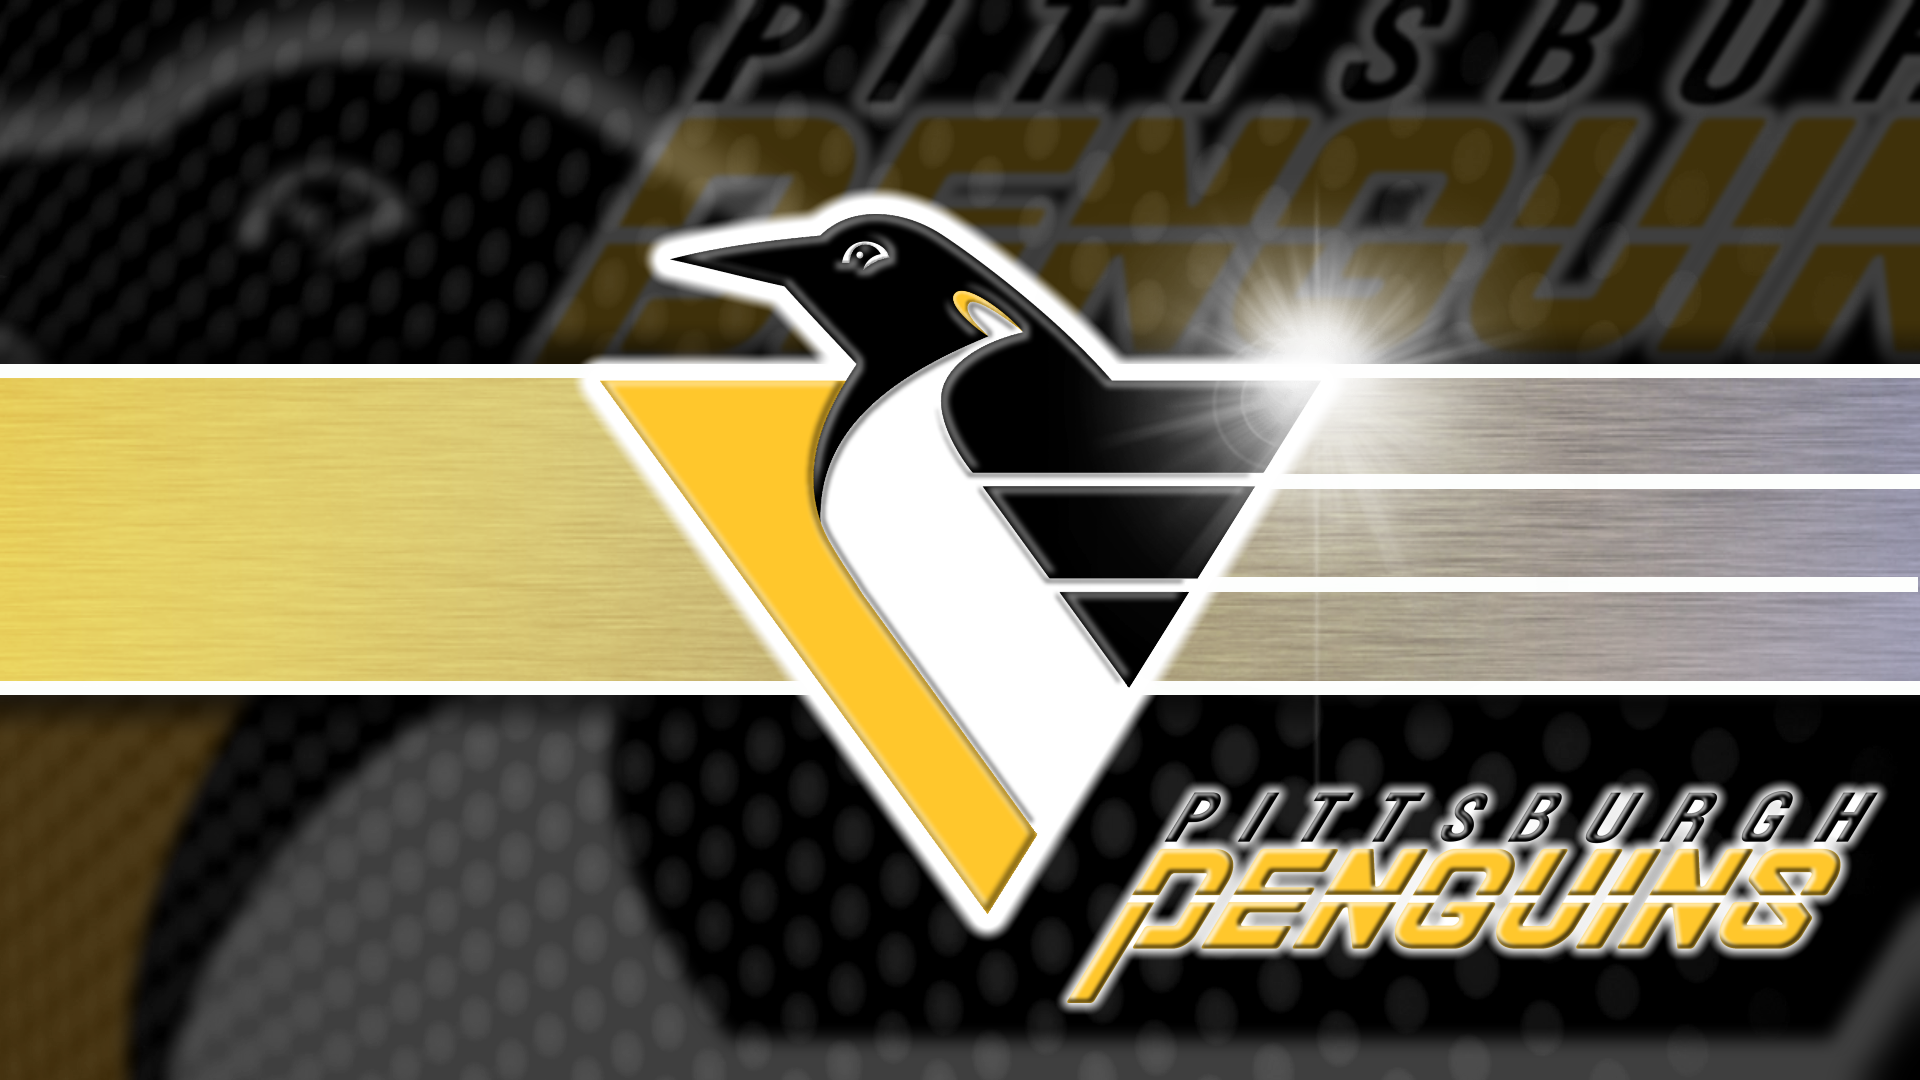 Pittsburgh Penguins Wallpaper Playoffs 2016 by FryeGFX on DeviantArt